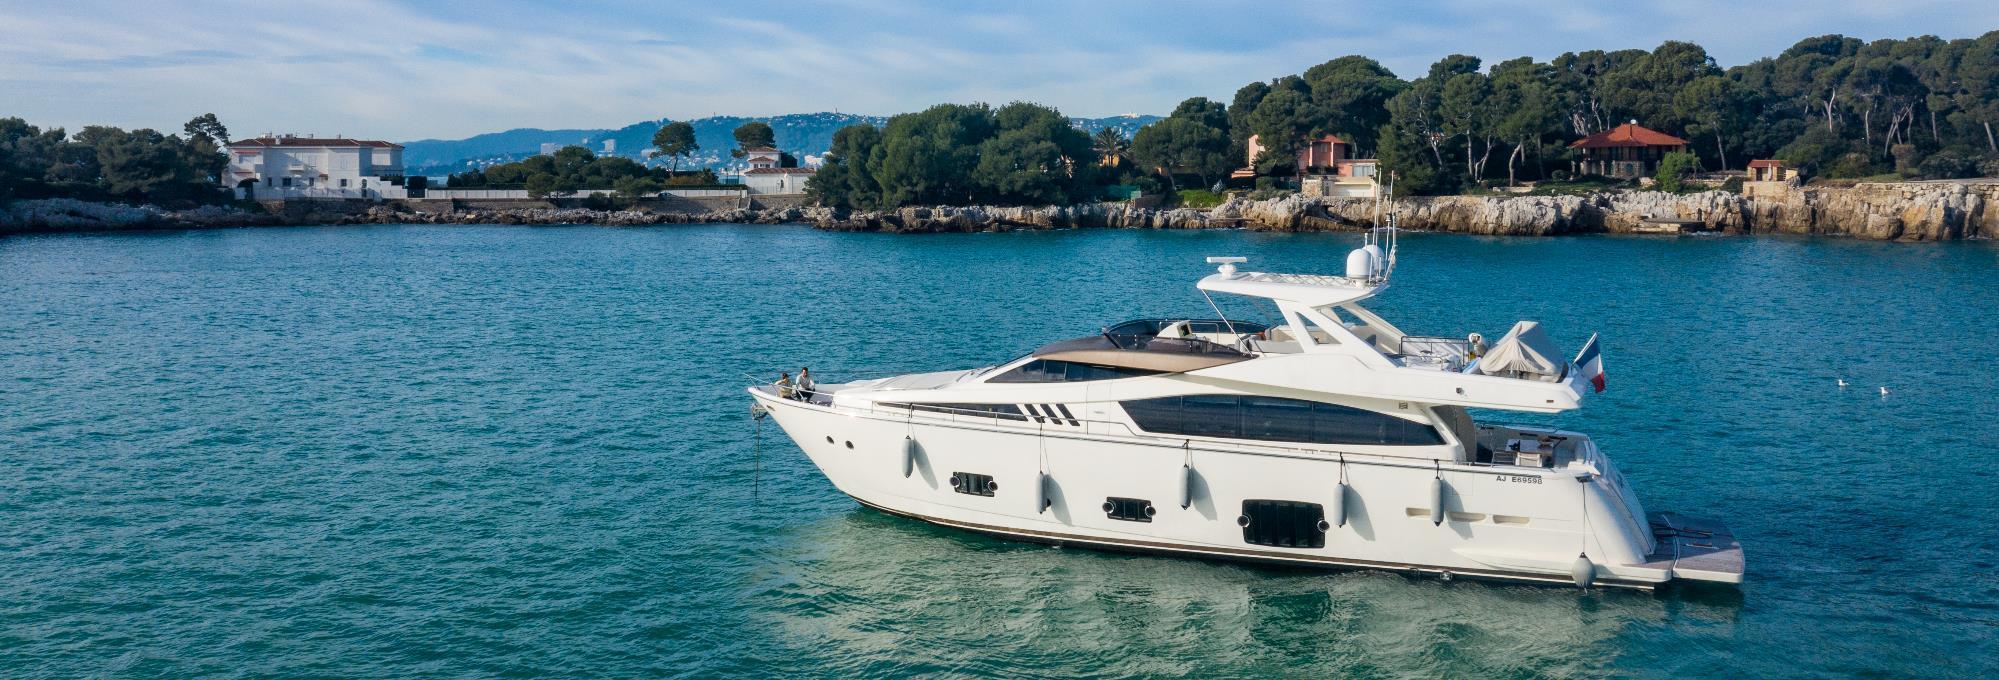 2011 Ferretti Yachts 800